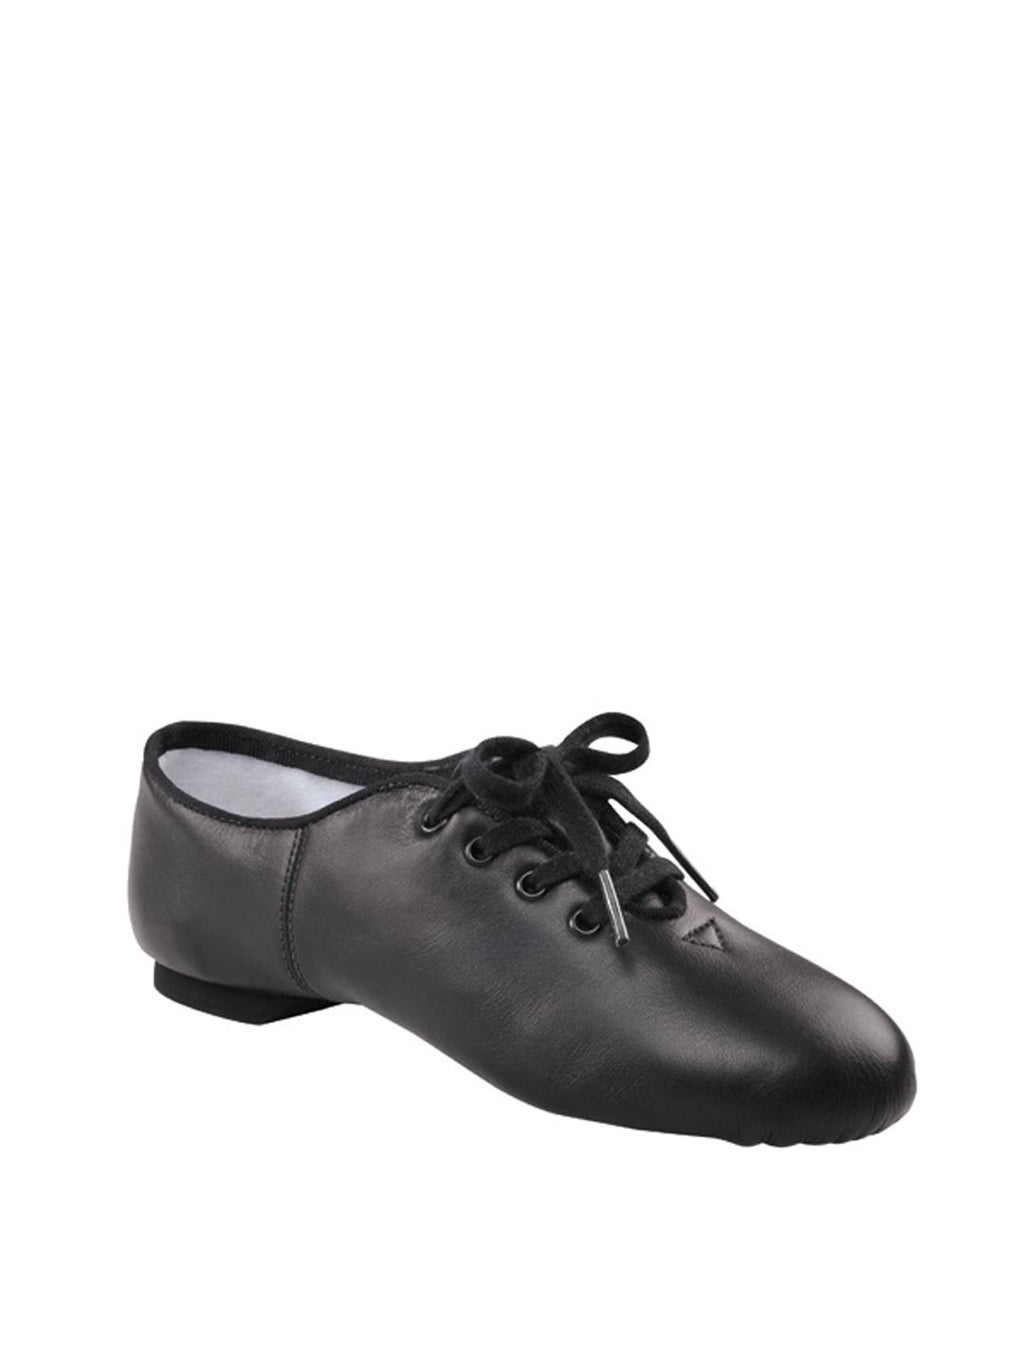 Capezio Black Split Sole Jazz Shoe CG02